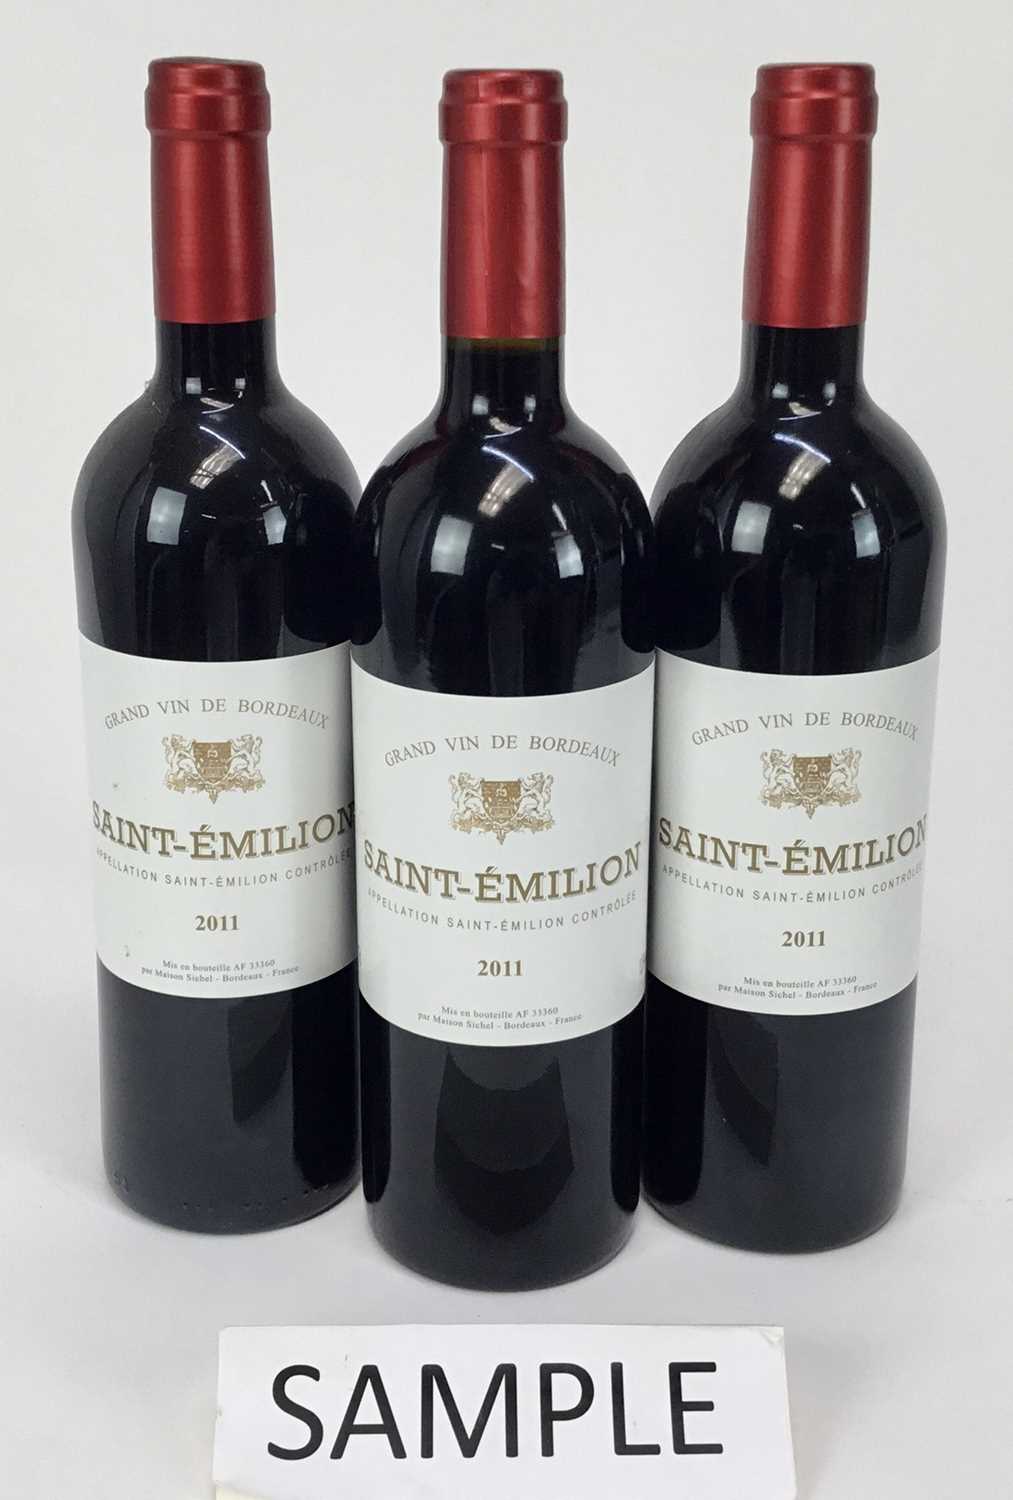 Lot 9 - Wine - twelve bottles, Grand Vin De Bordeaux Saint-Emilion 2011